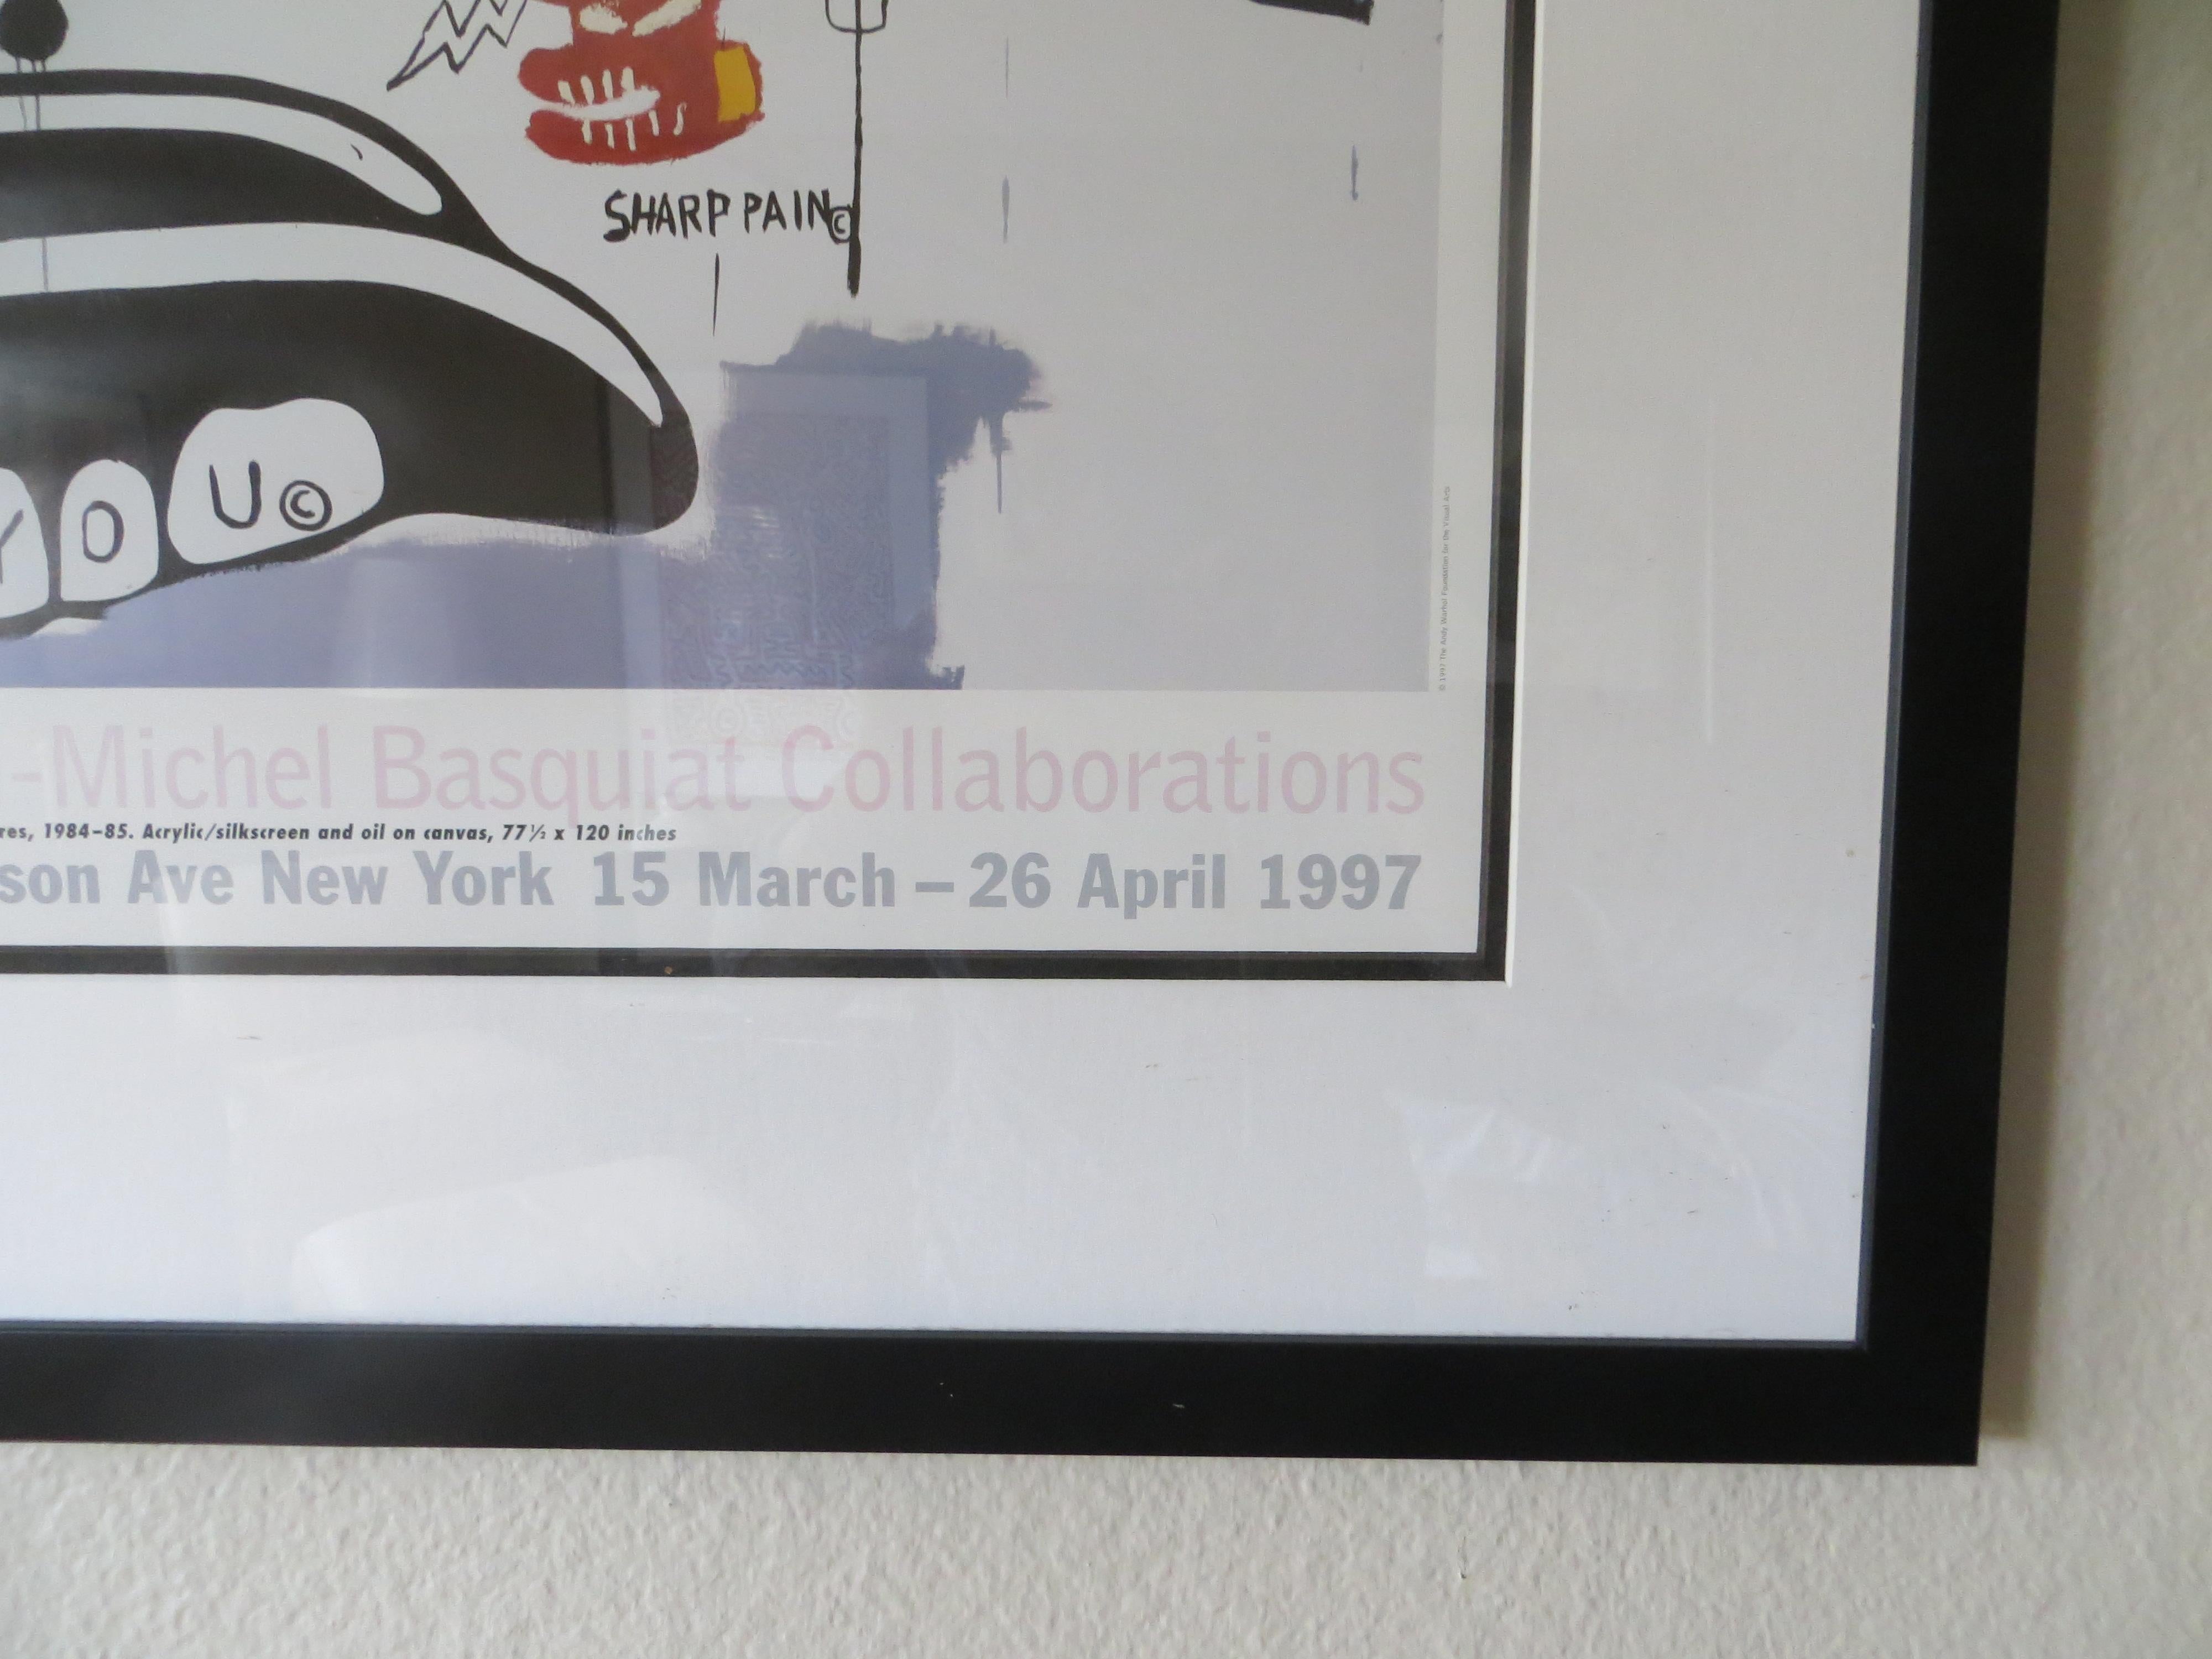 L'affiche d'exposition Pop Art imprimée en lithographie est publiée par la célèbre Gallery Gagosian de New York, imprimée en 1997 en édition limitée non numérotée à l'occasion de l'exposition. Elle présente une œuvre de collaboration créée à